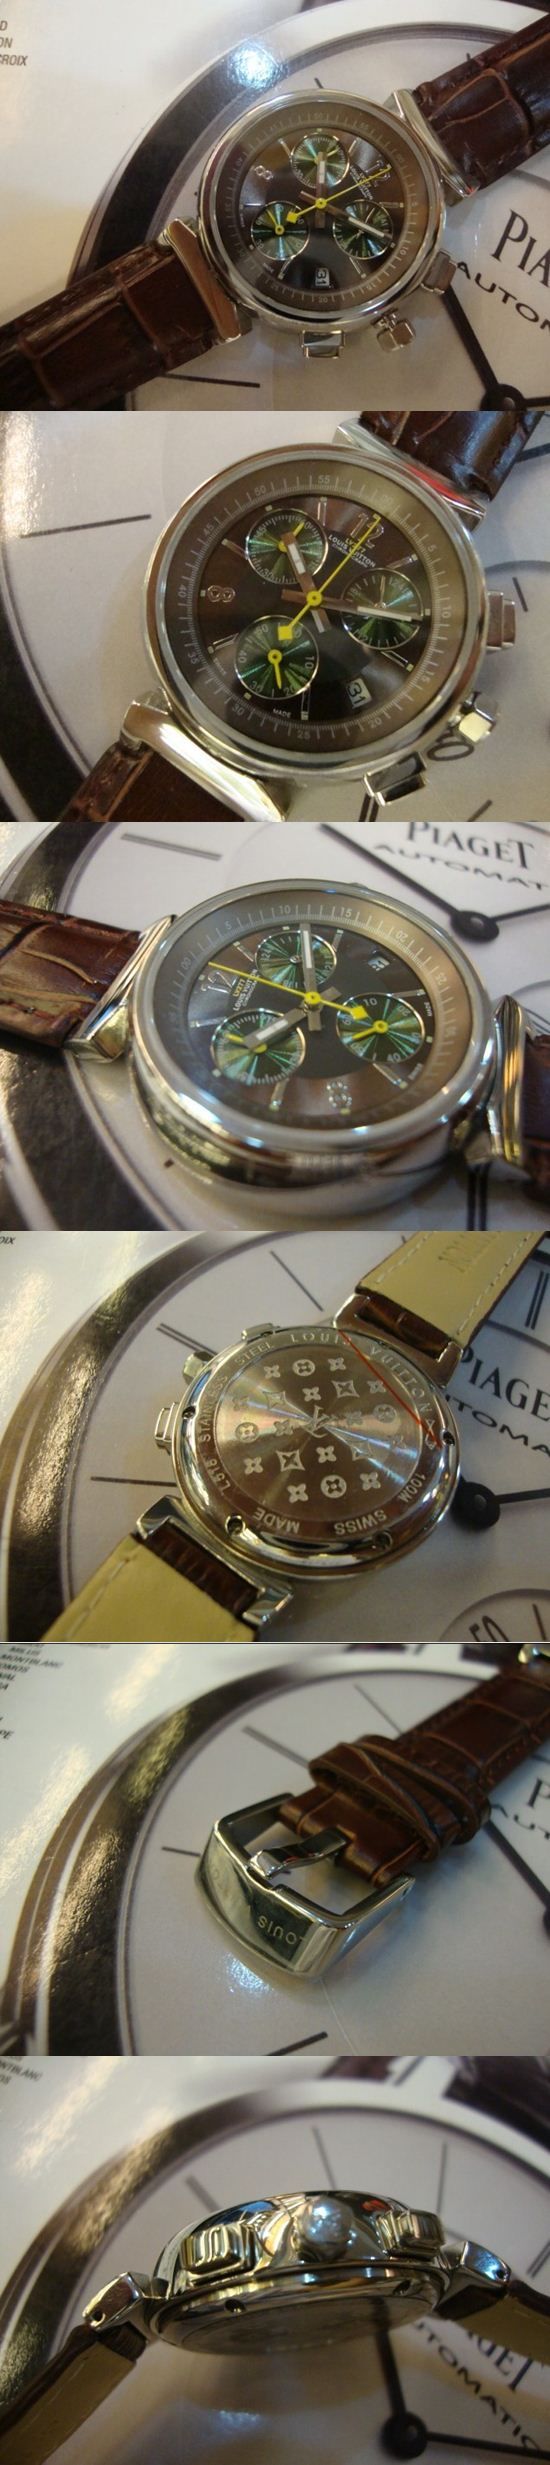 おしゃれなブランド時計がLOUIS-VUITTON-ルイヴィトン腕時計 ルイヴィトン 男/女性用腕時計 LOUIS-VUITTON-N-011Aを提供します.